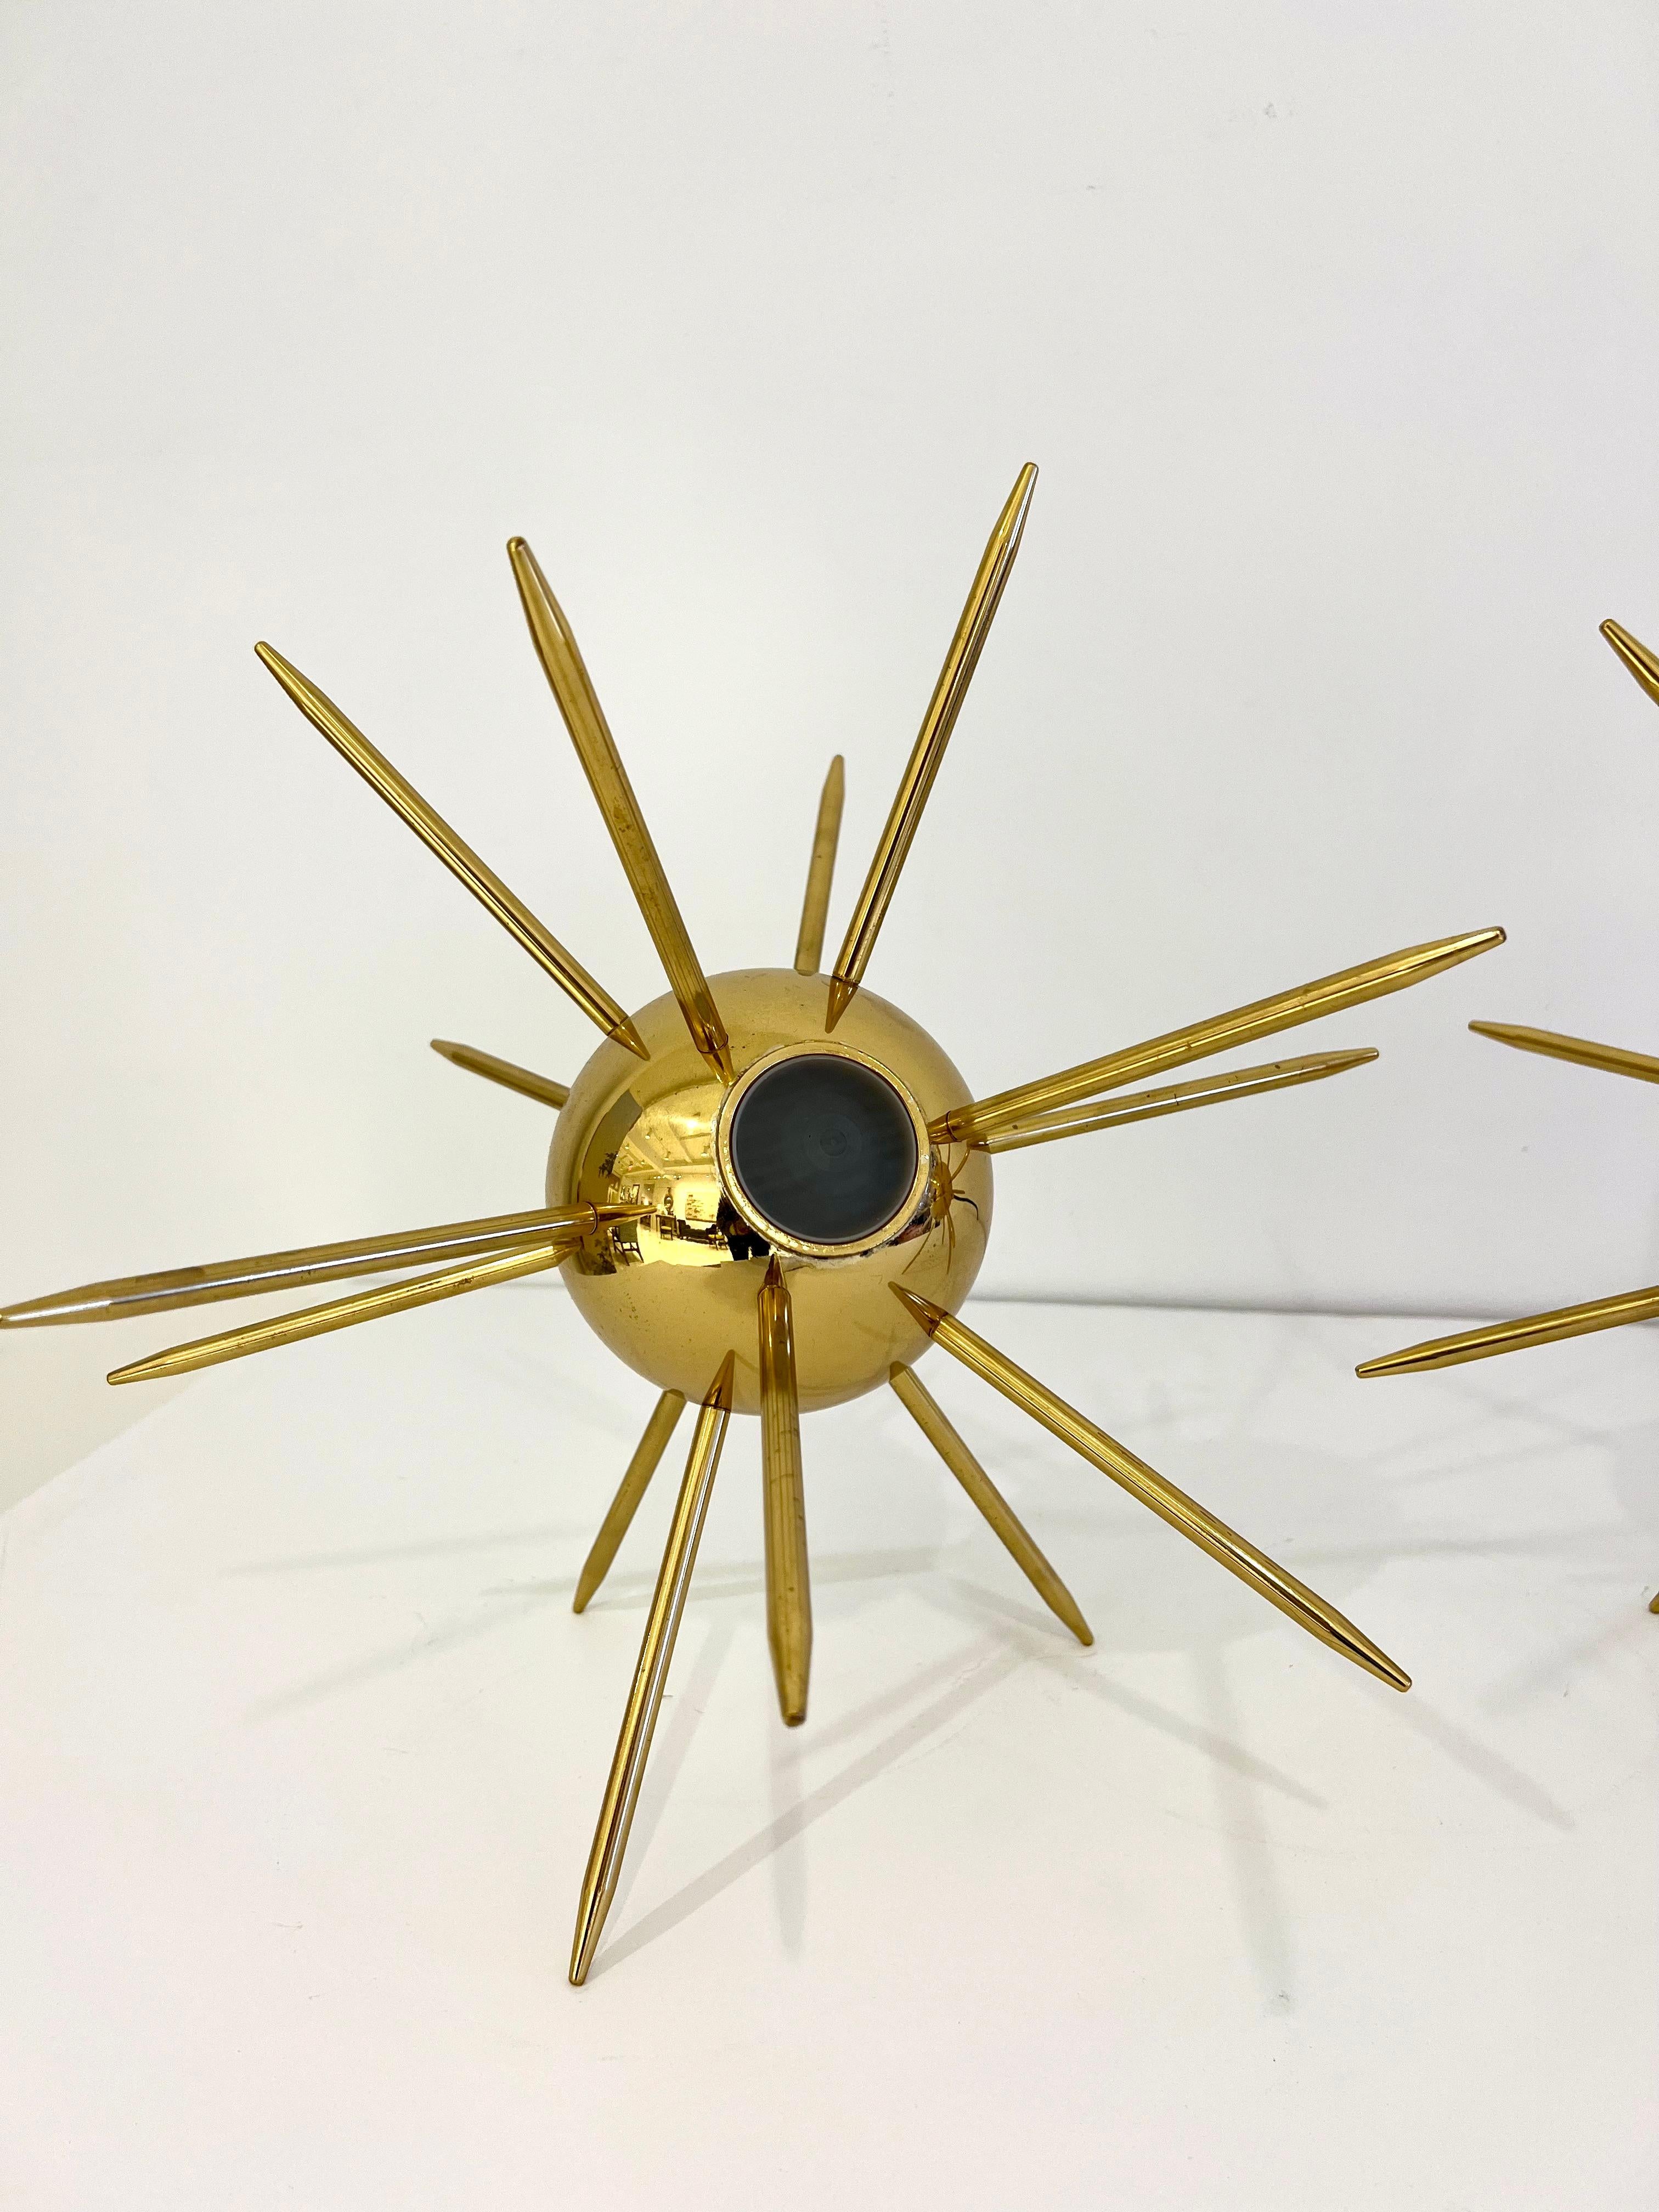 Paire de lampes Sputnik contemporaines en laiton. Italie, contemporain.
Diamètre total : 16